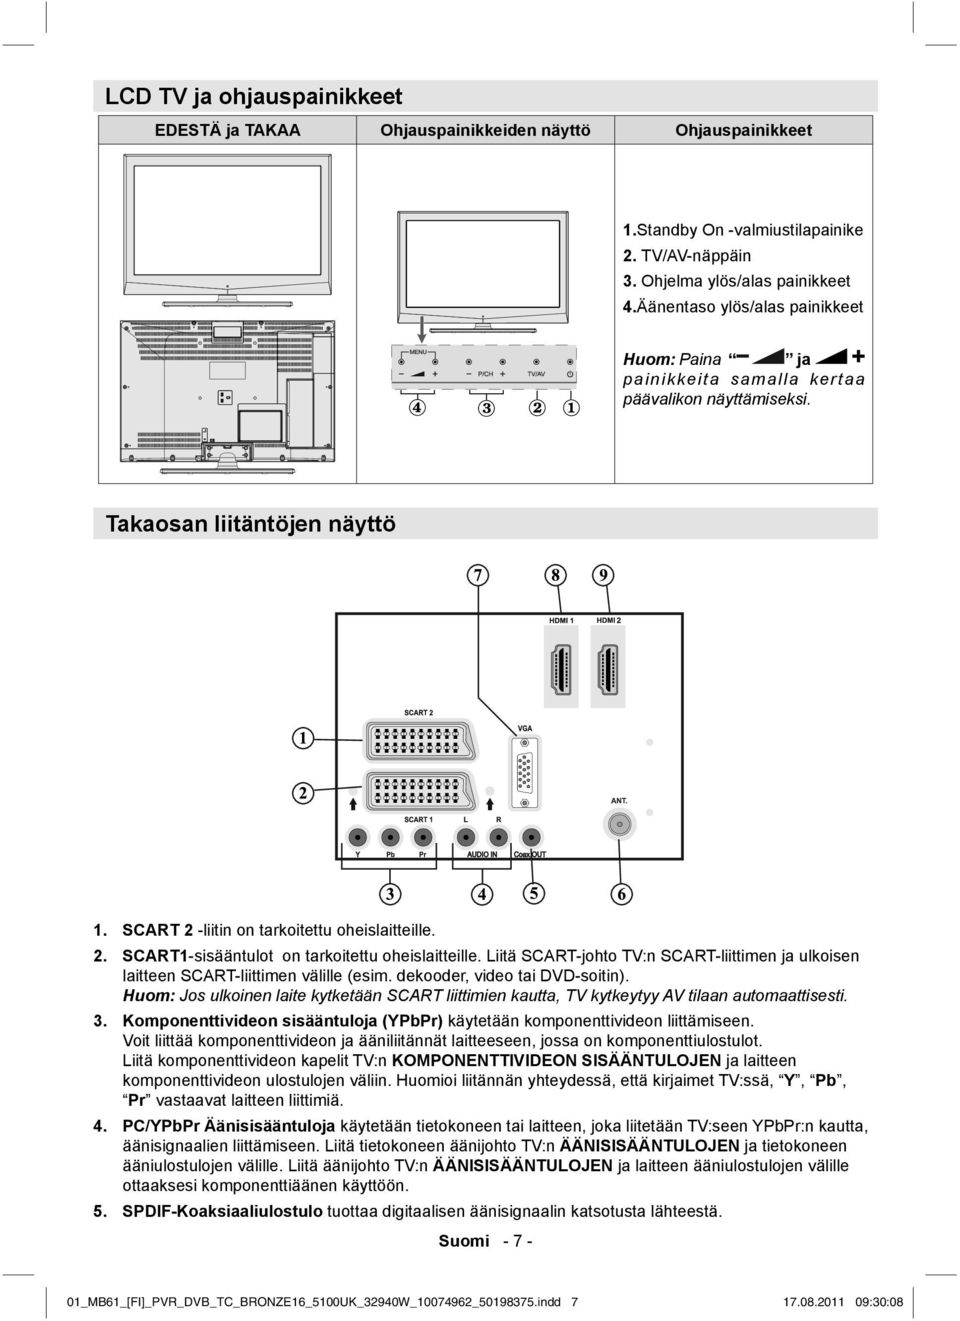 Liitä SCART-johto TV:n SCART-liittimen ja ulkoisen laitteen SCART-liittimen välille (esim. dekooder, video tai DVD-soitin).